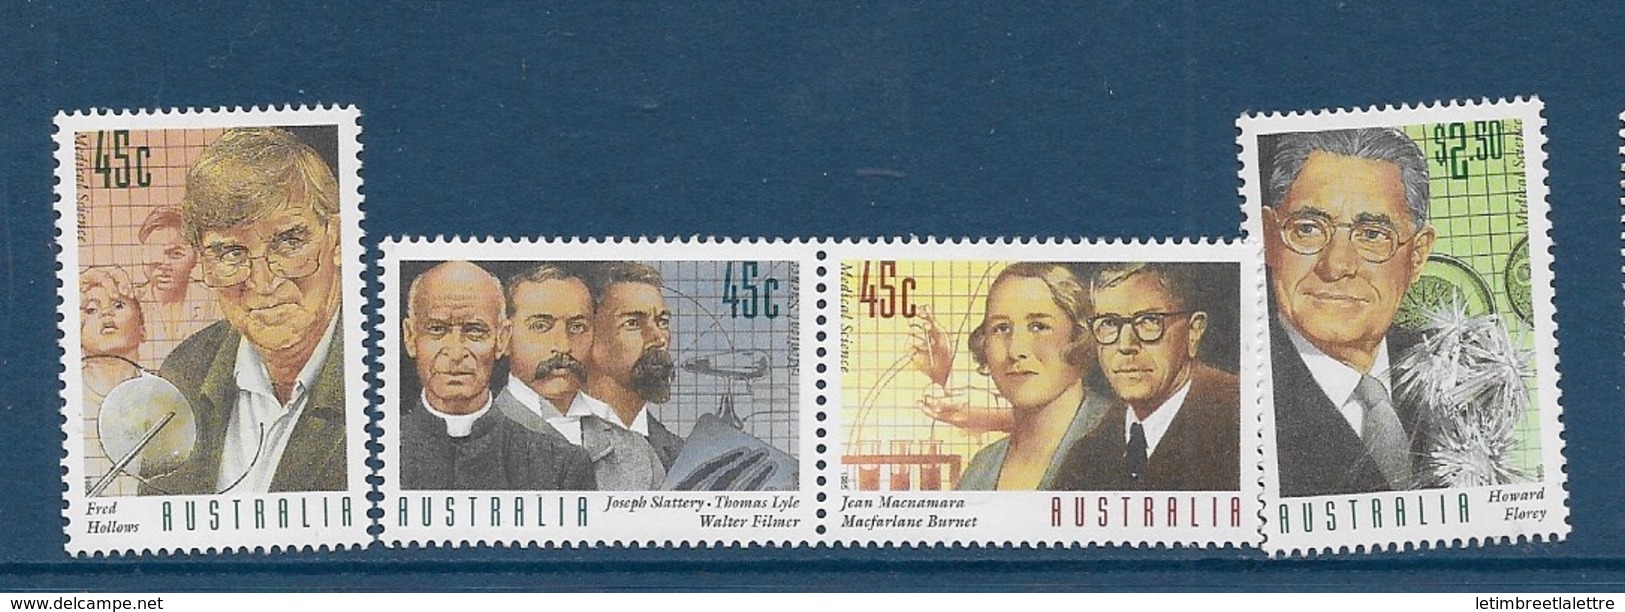 Australie N°1462 à1465** - Mint Stamps